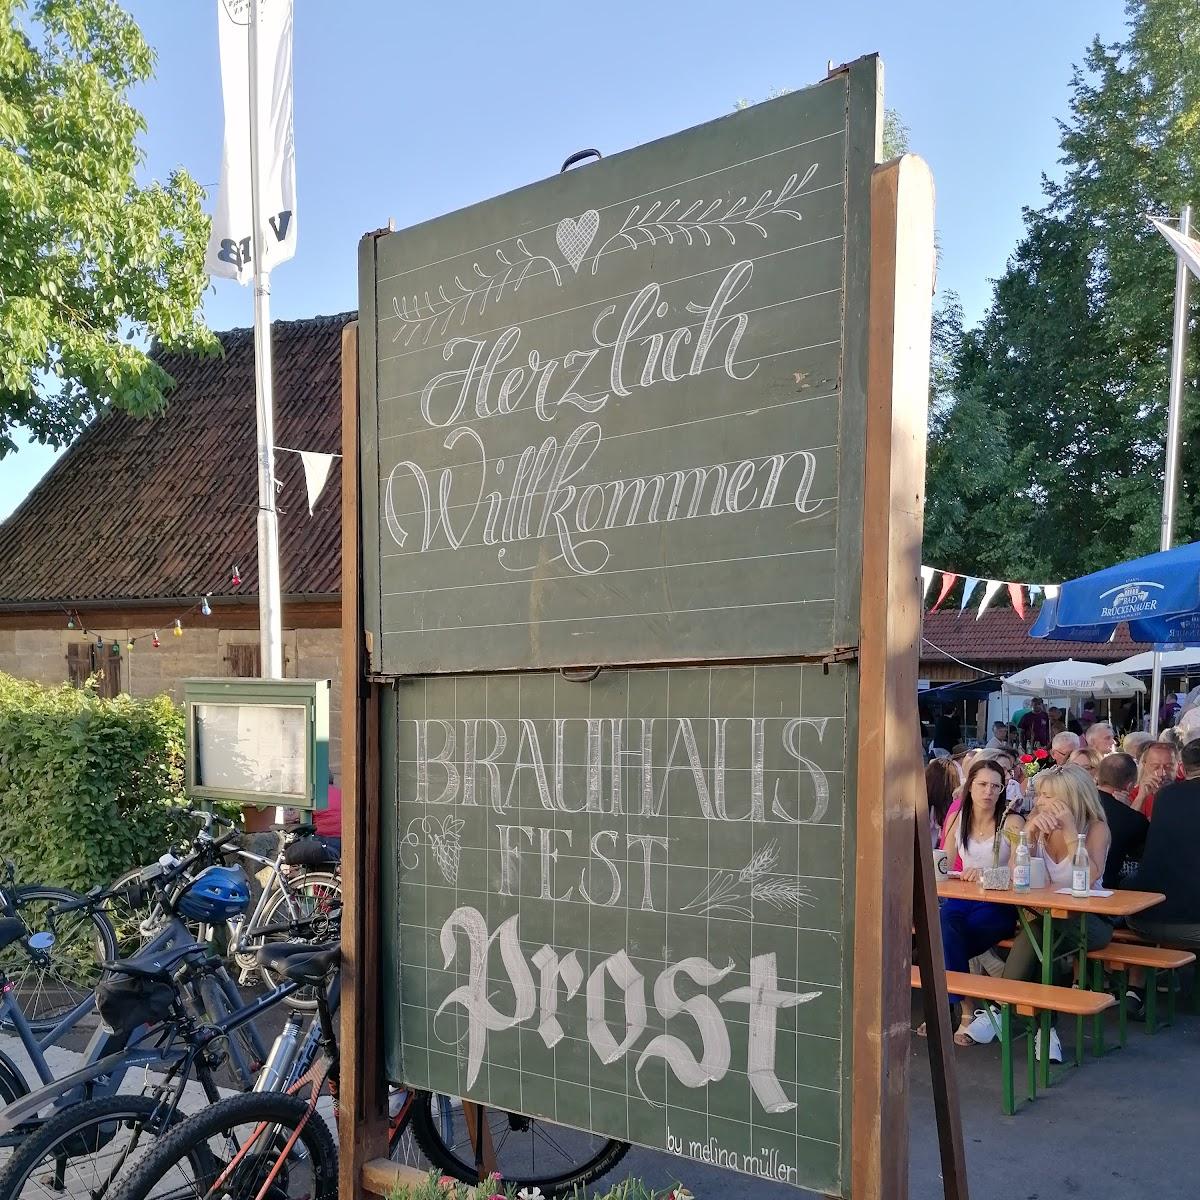 Restaurant "Brauhaus Junkersdorf" in Pfarrweisach